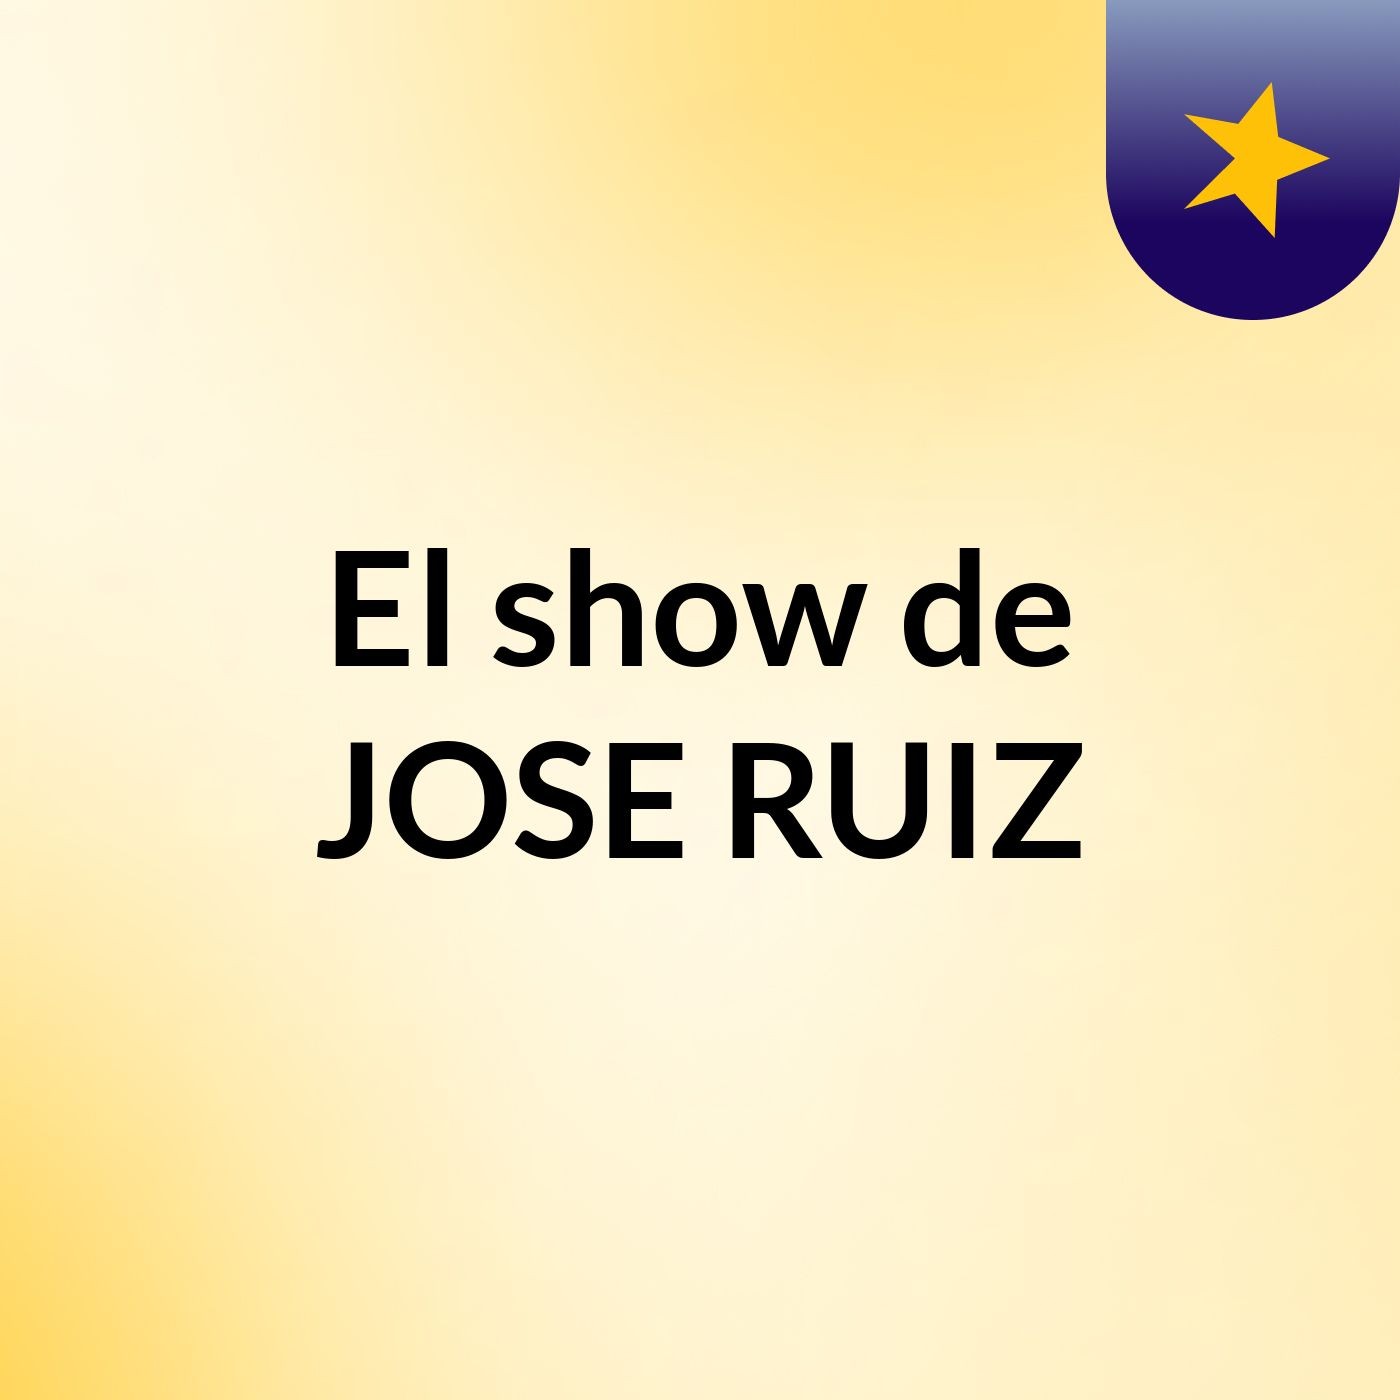 El show de JOSE RUIZ